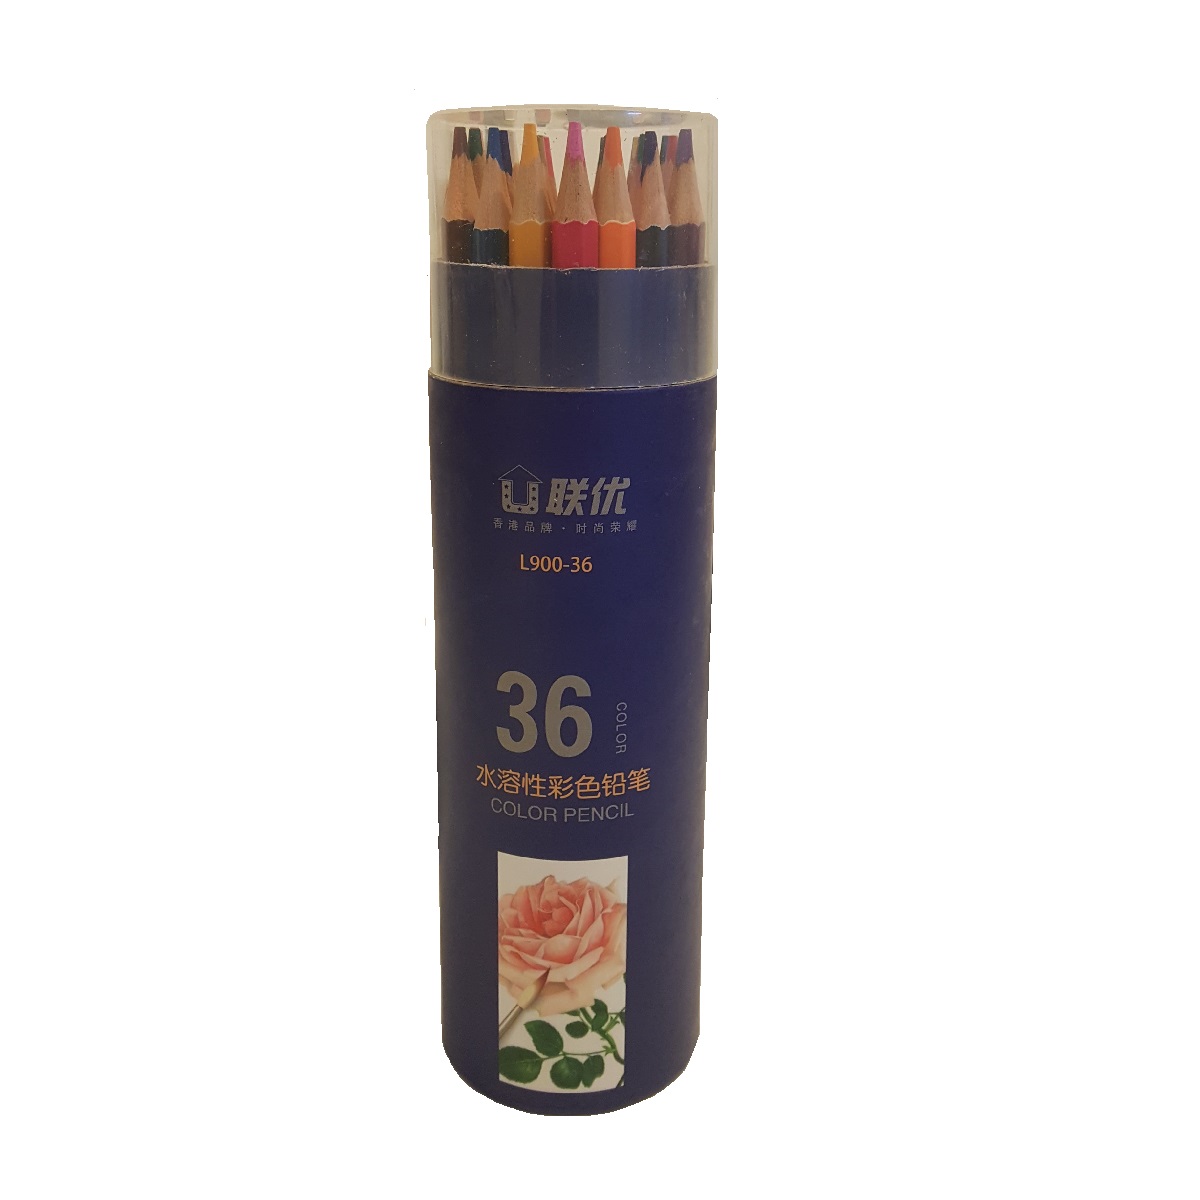 مداد رنگی 36 رنگ مدل L900_36